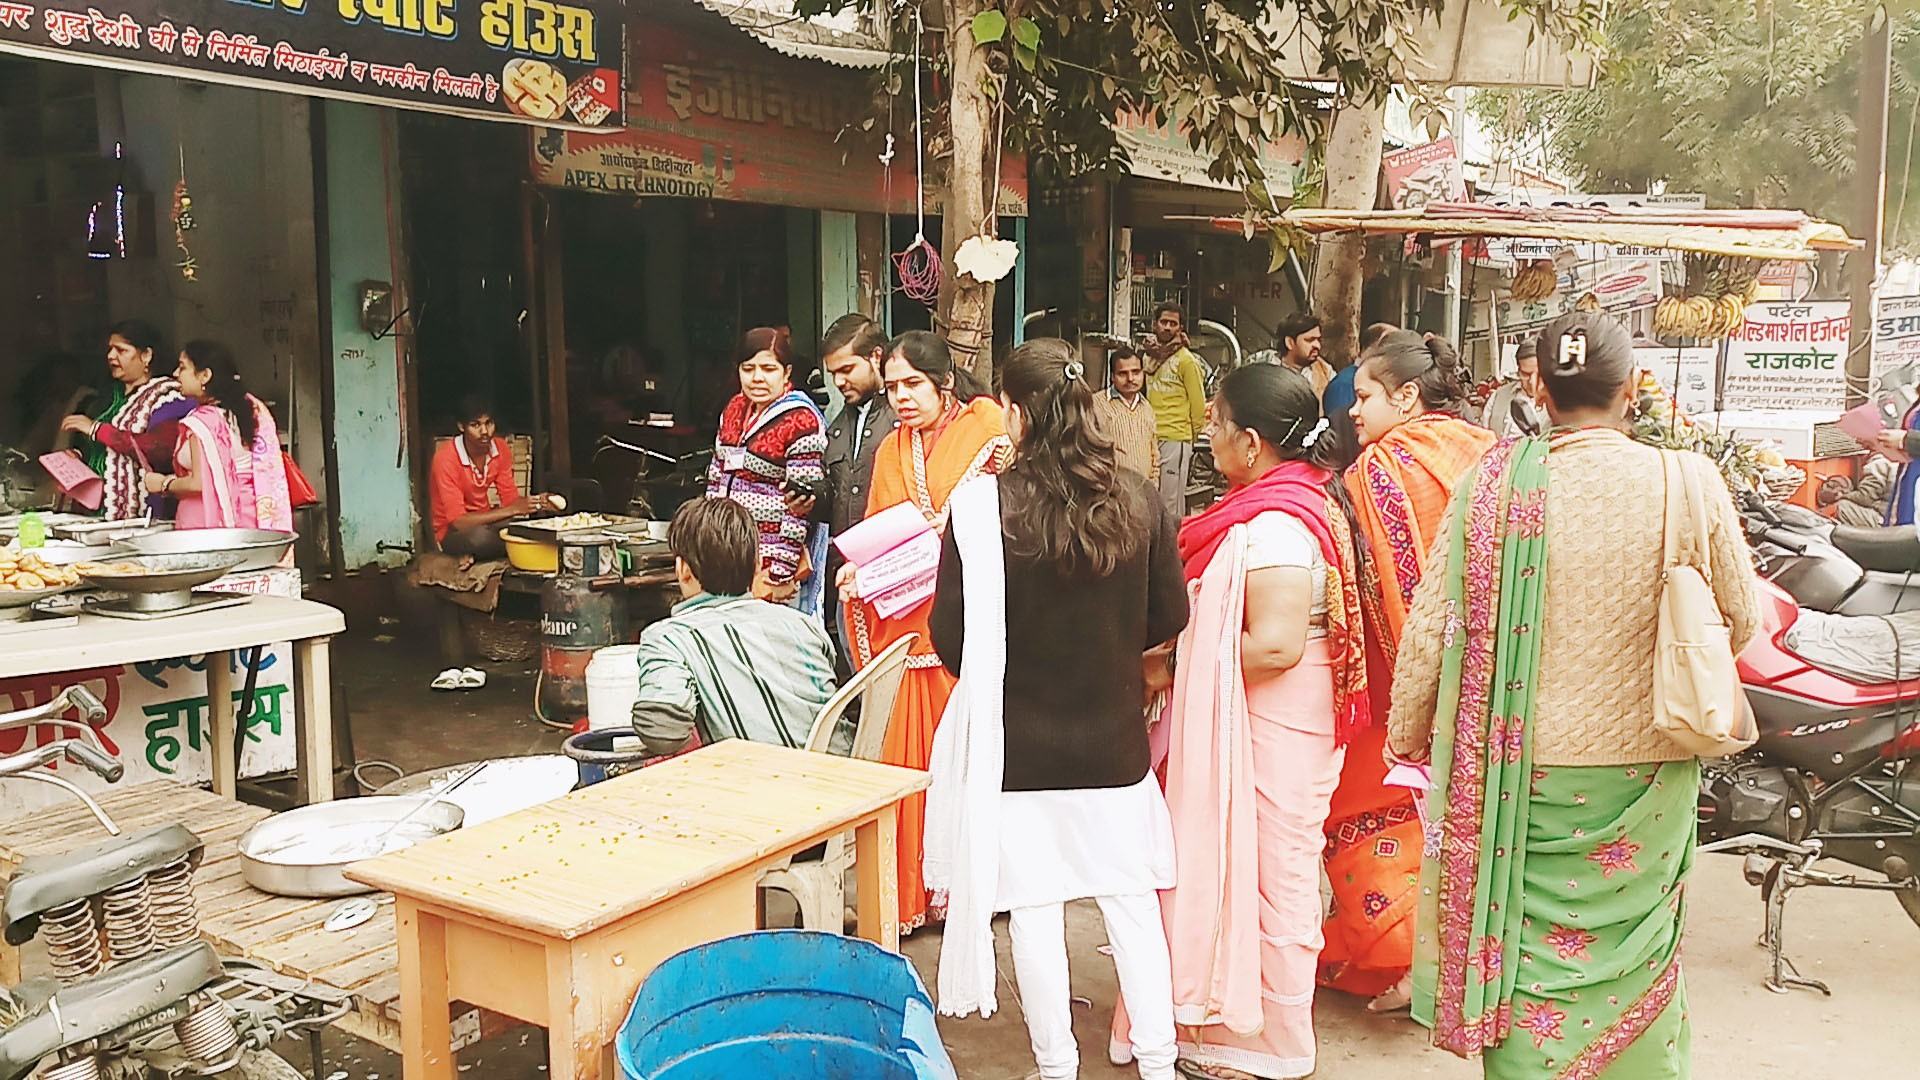 स्वच्छता के लिए औरैया जिले की महिलाओं ने उठाया बीड़ा, दुकानों पर रखवा रहीं कूड़ेदान 